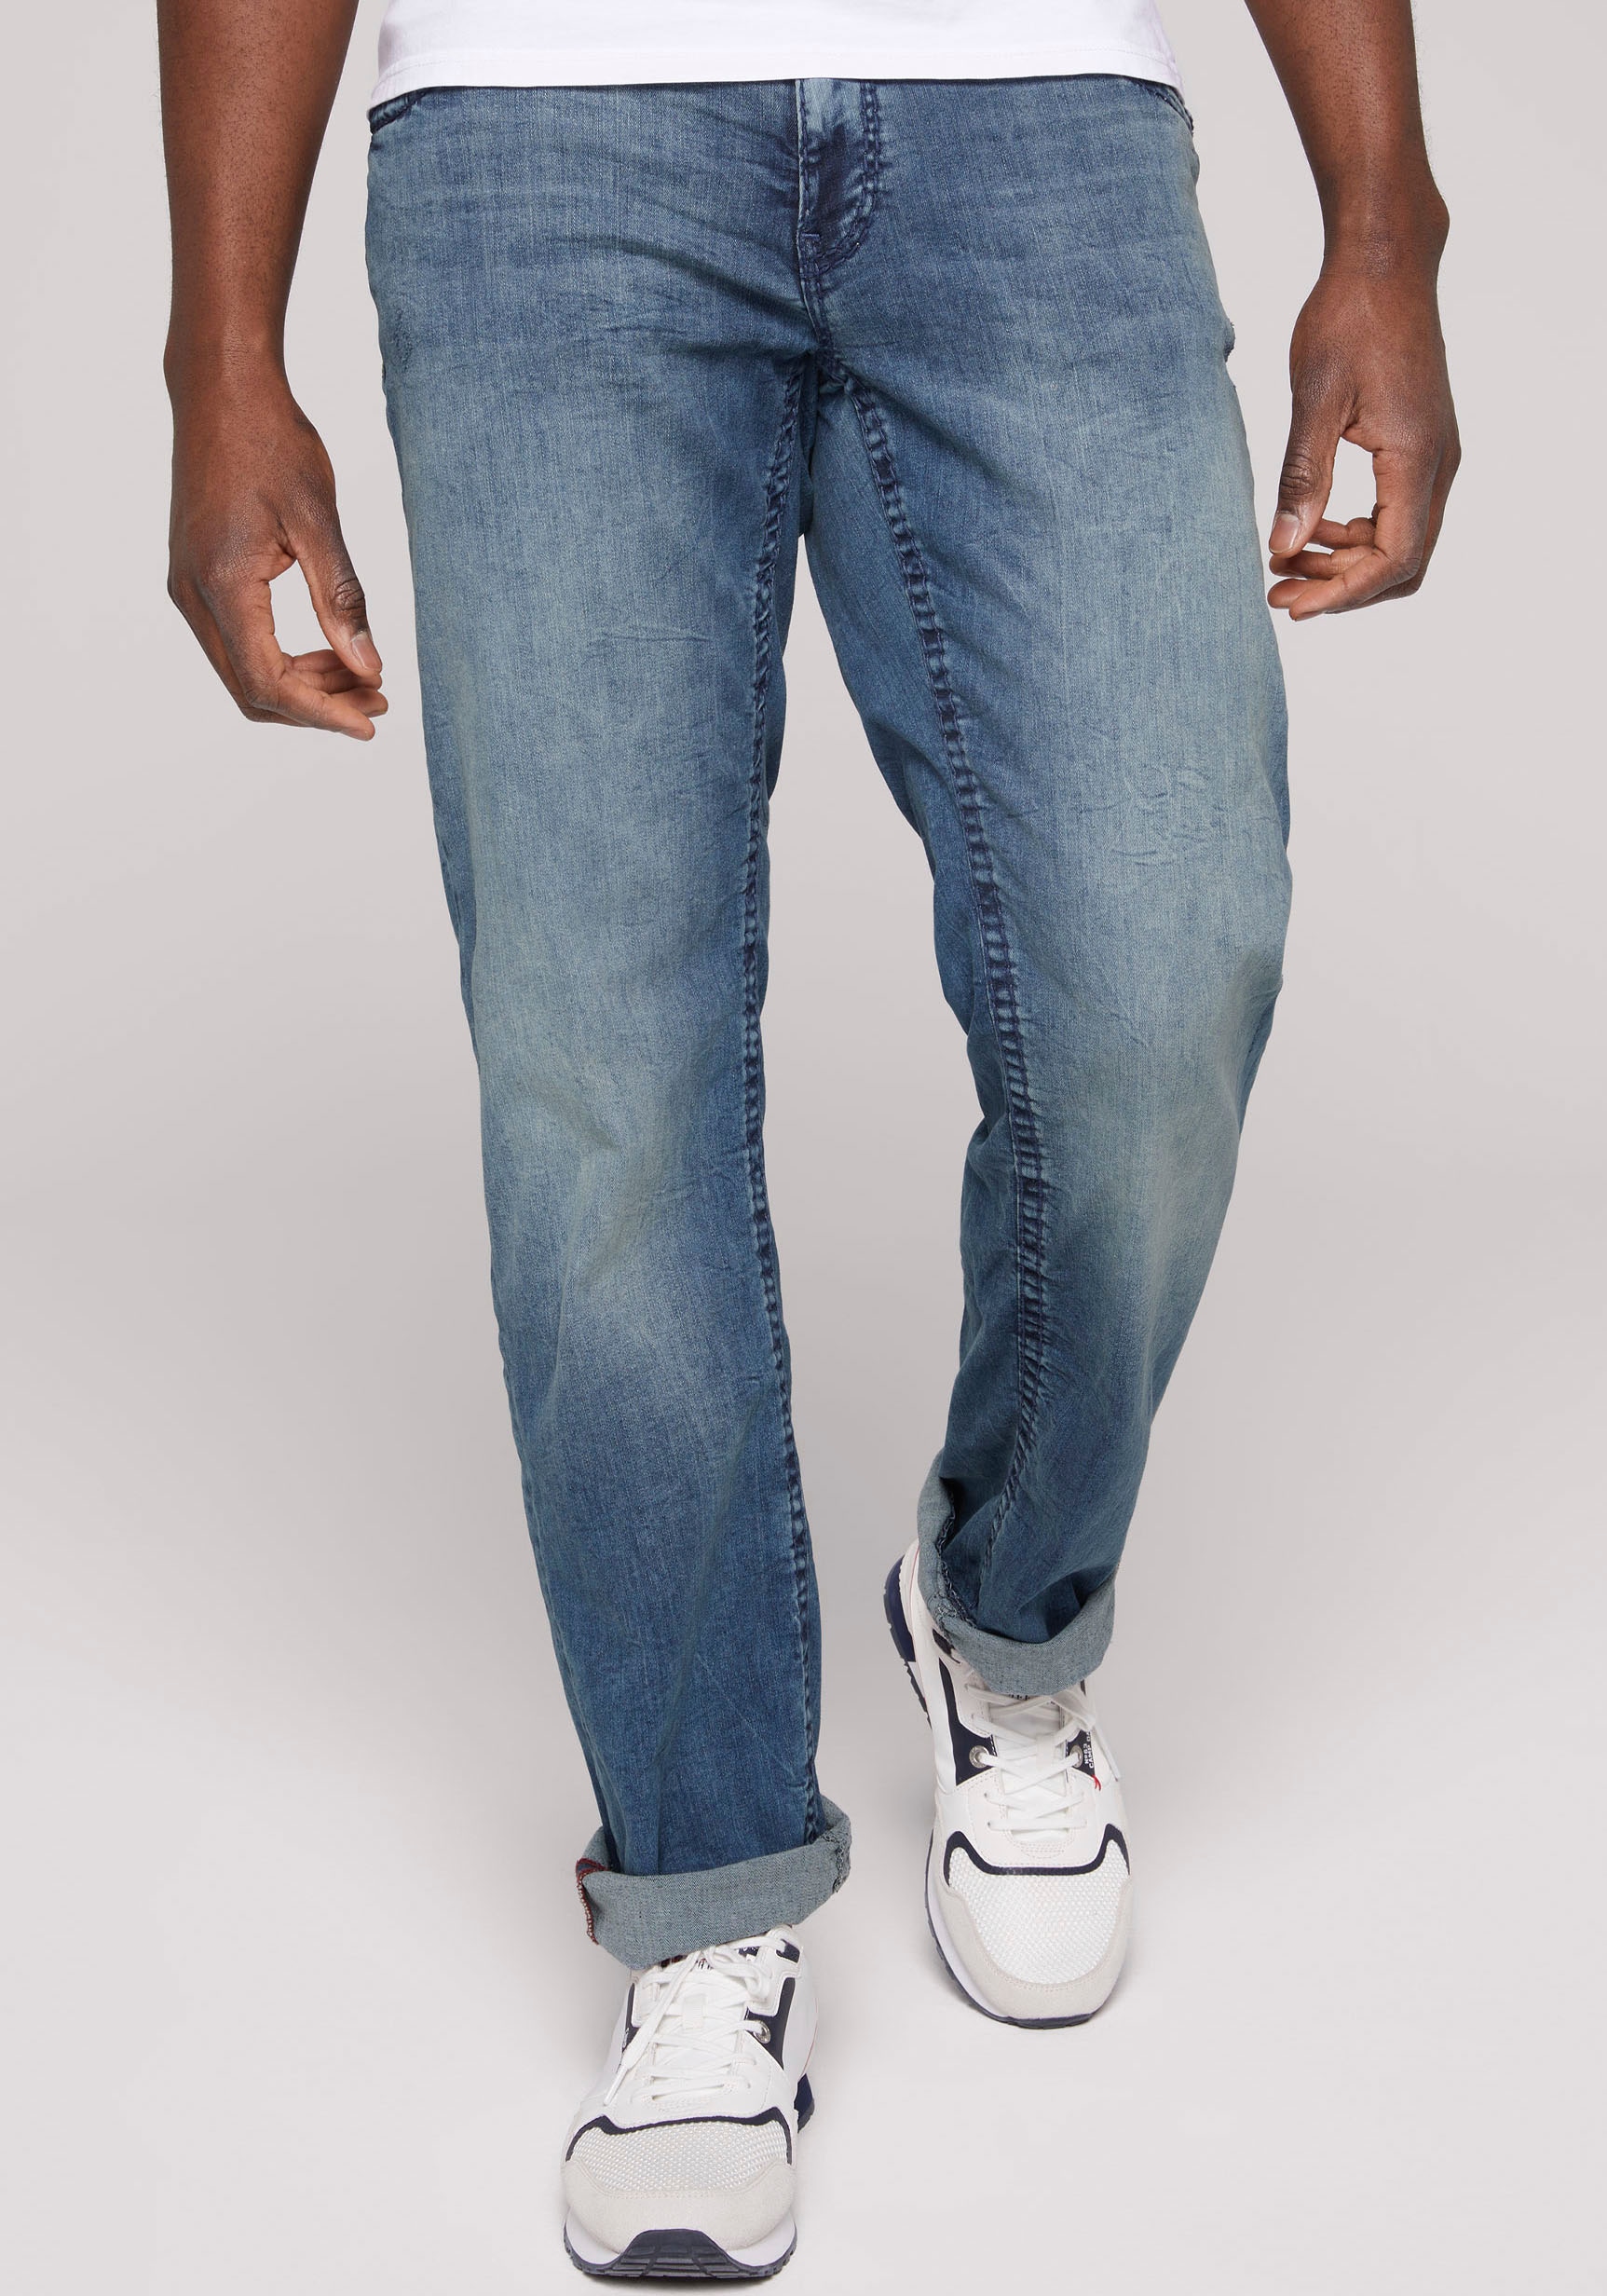 CAMP DAVID günstig Nähten Loose-fit-Jeans kaufen »CO:NO:C622«, mit markanten